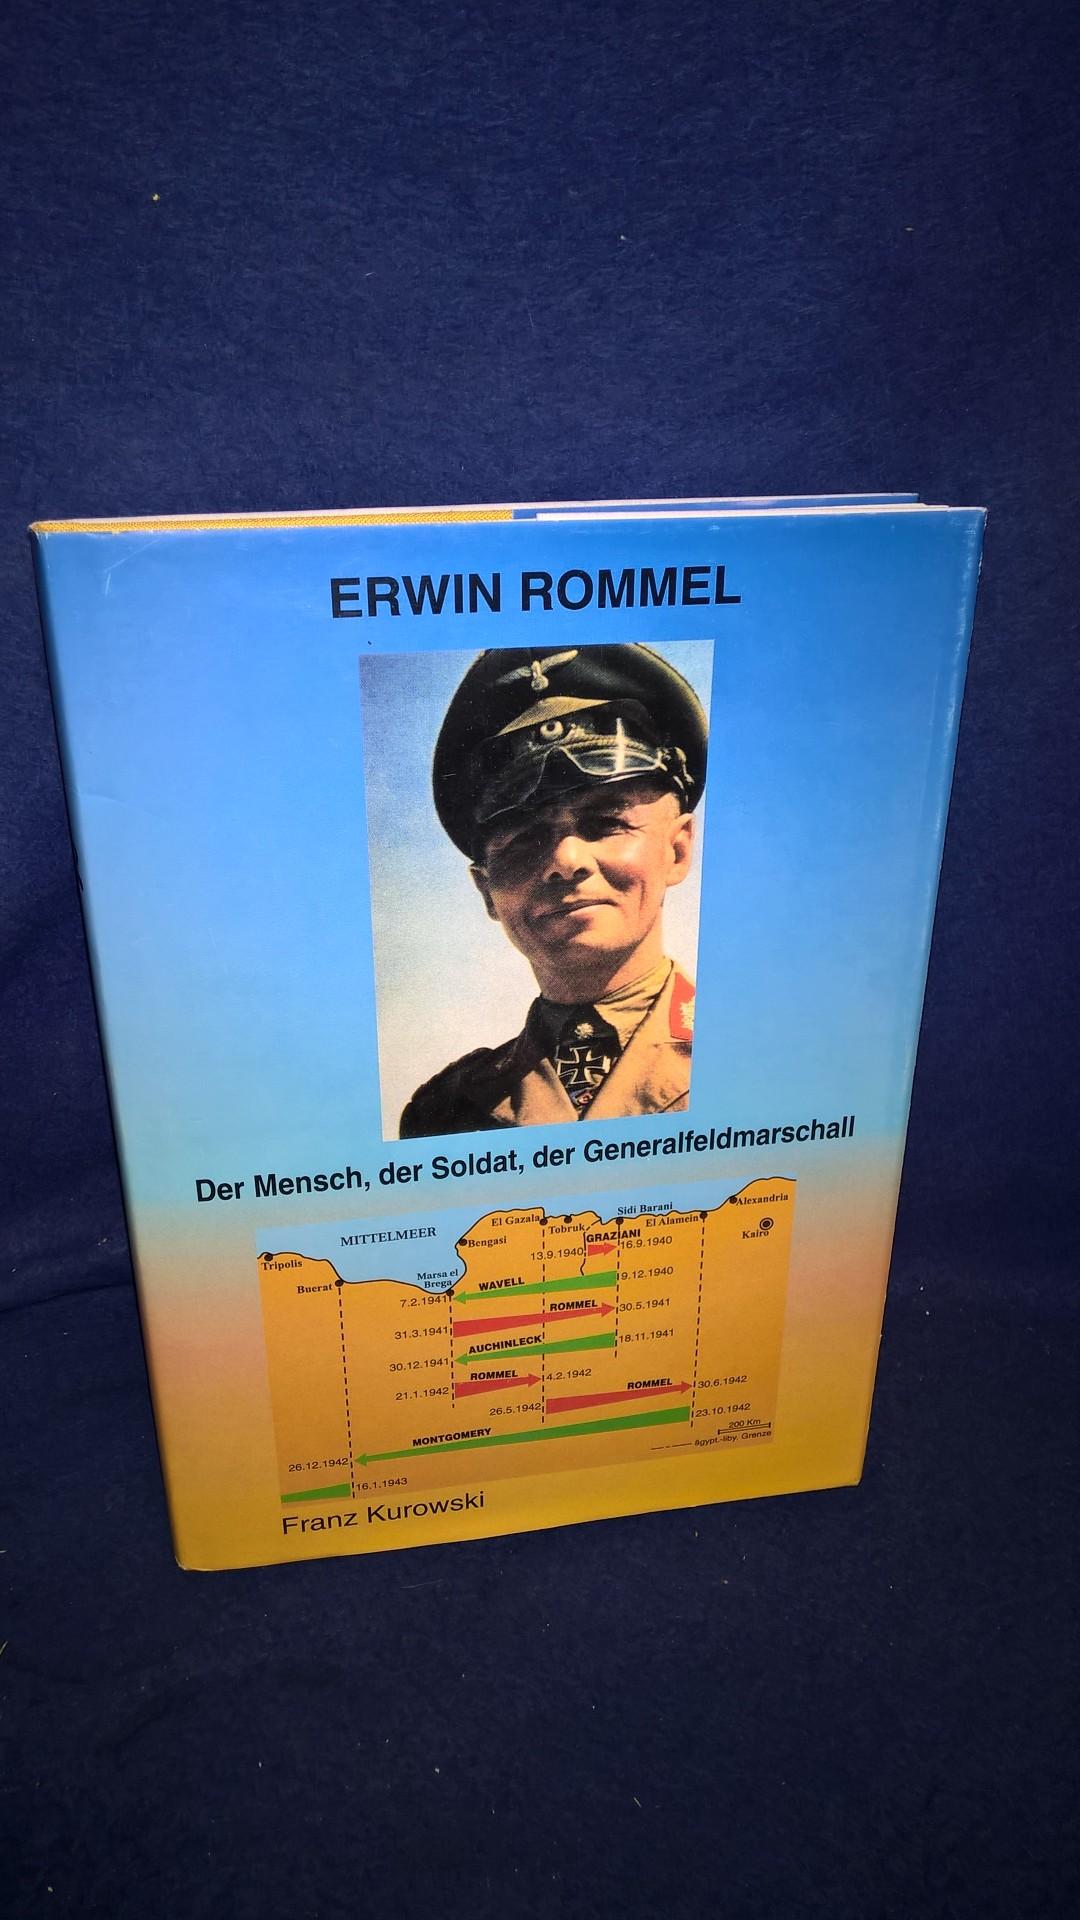 Erwin Rommel - Der Mensch, der Soldat, der Generalfeldmarschall